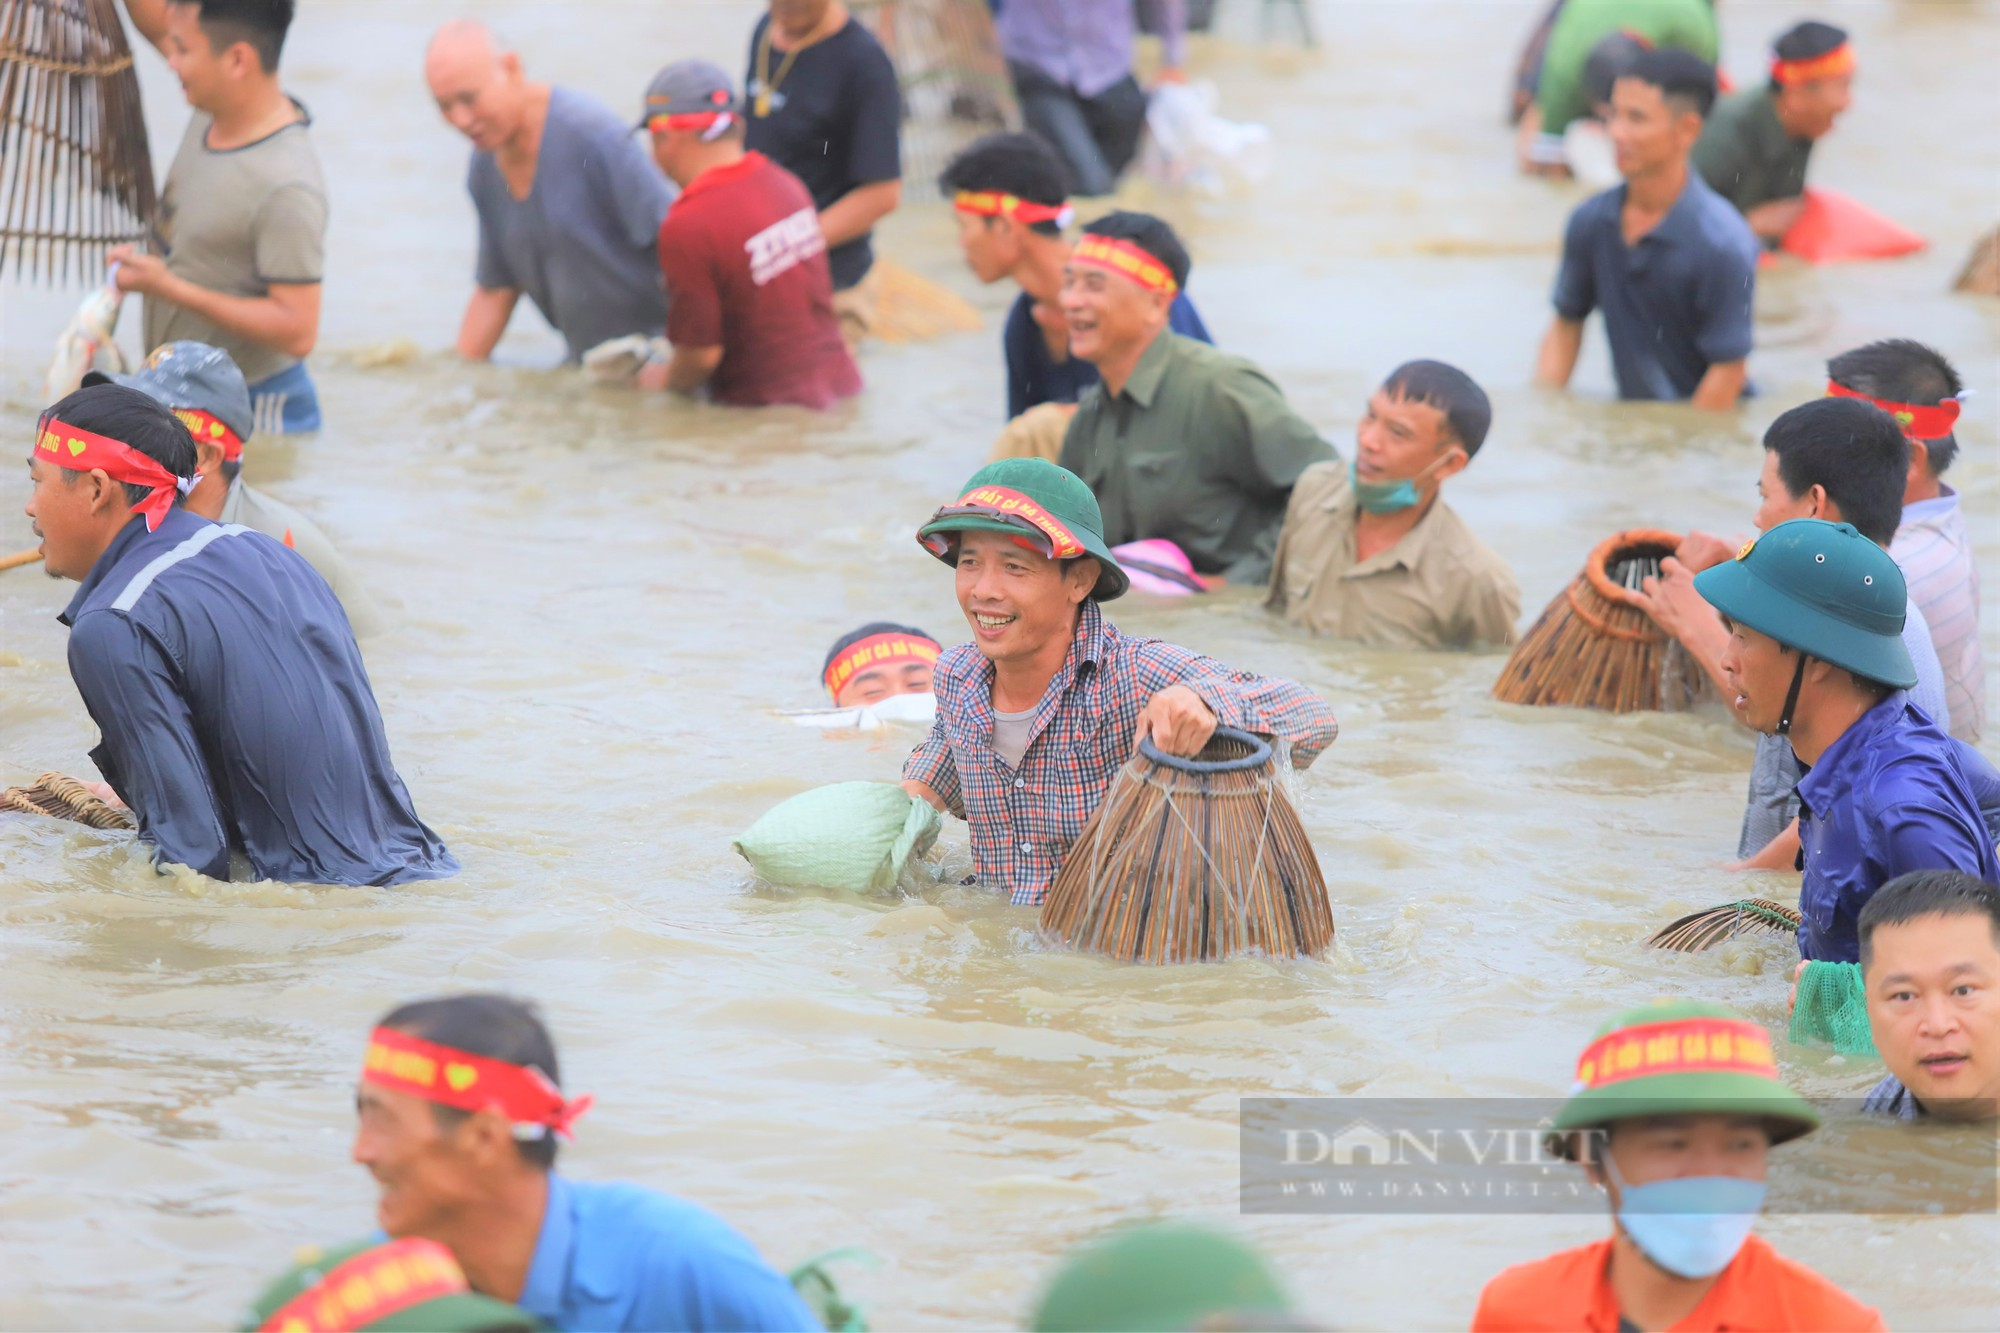 Hà Tĩnh: Hàng nghìn người dân reo hò, lội bùn tham gia Lễ hội bắt cá truyền thống xã Thạch Hưng - Ảnh 4.